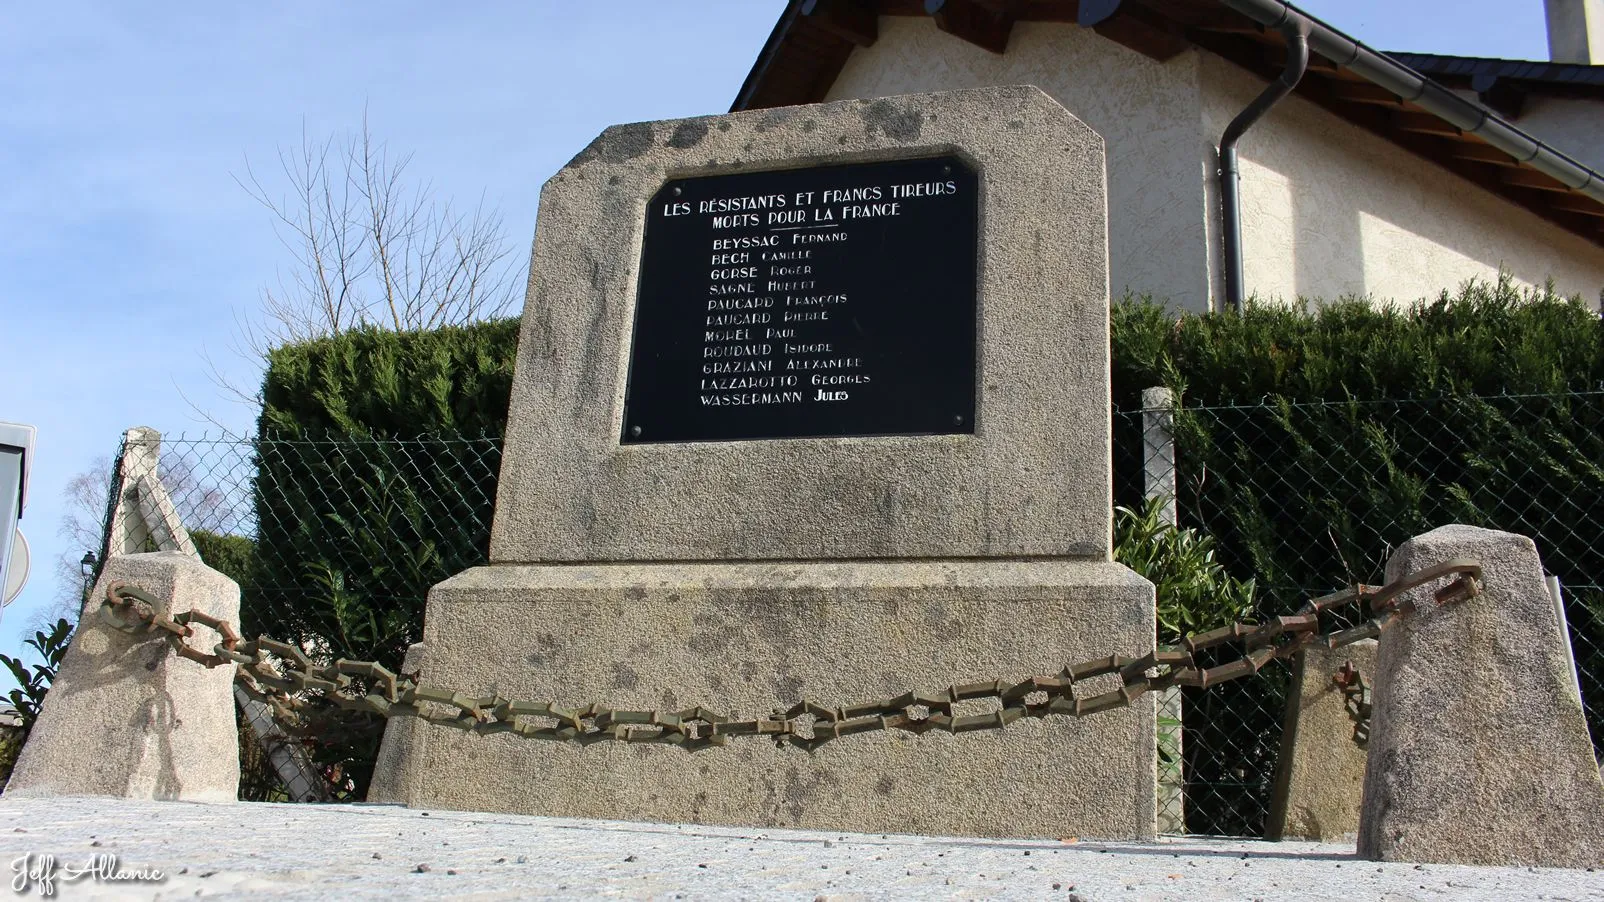 Corrèze découverte - Photo N° 4 - Stèle de la résistance de la gare d'Eyrein - 19800 - Eyrien - Passages d'histoires - Quelques pas - Autour de vous